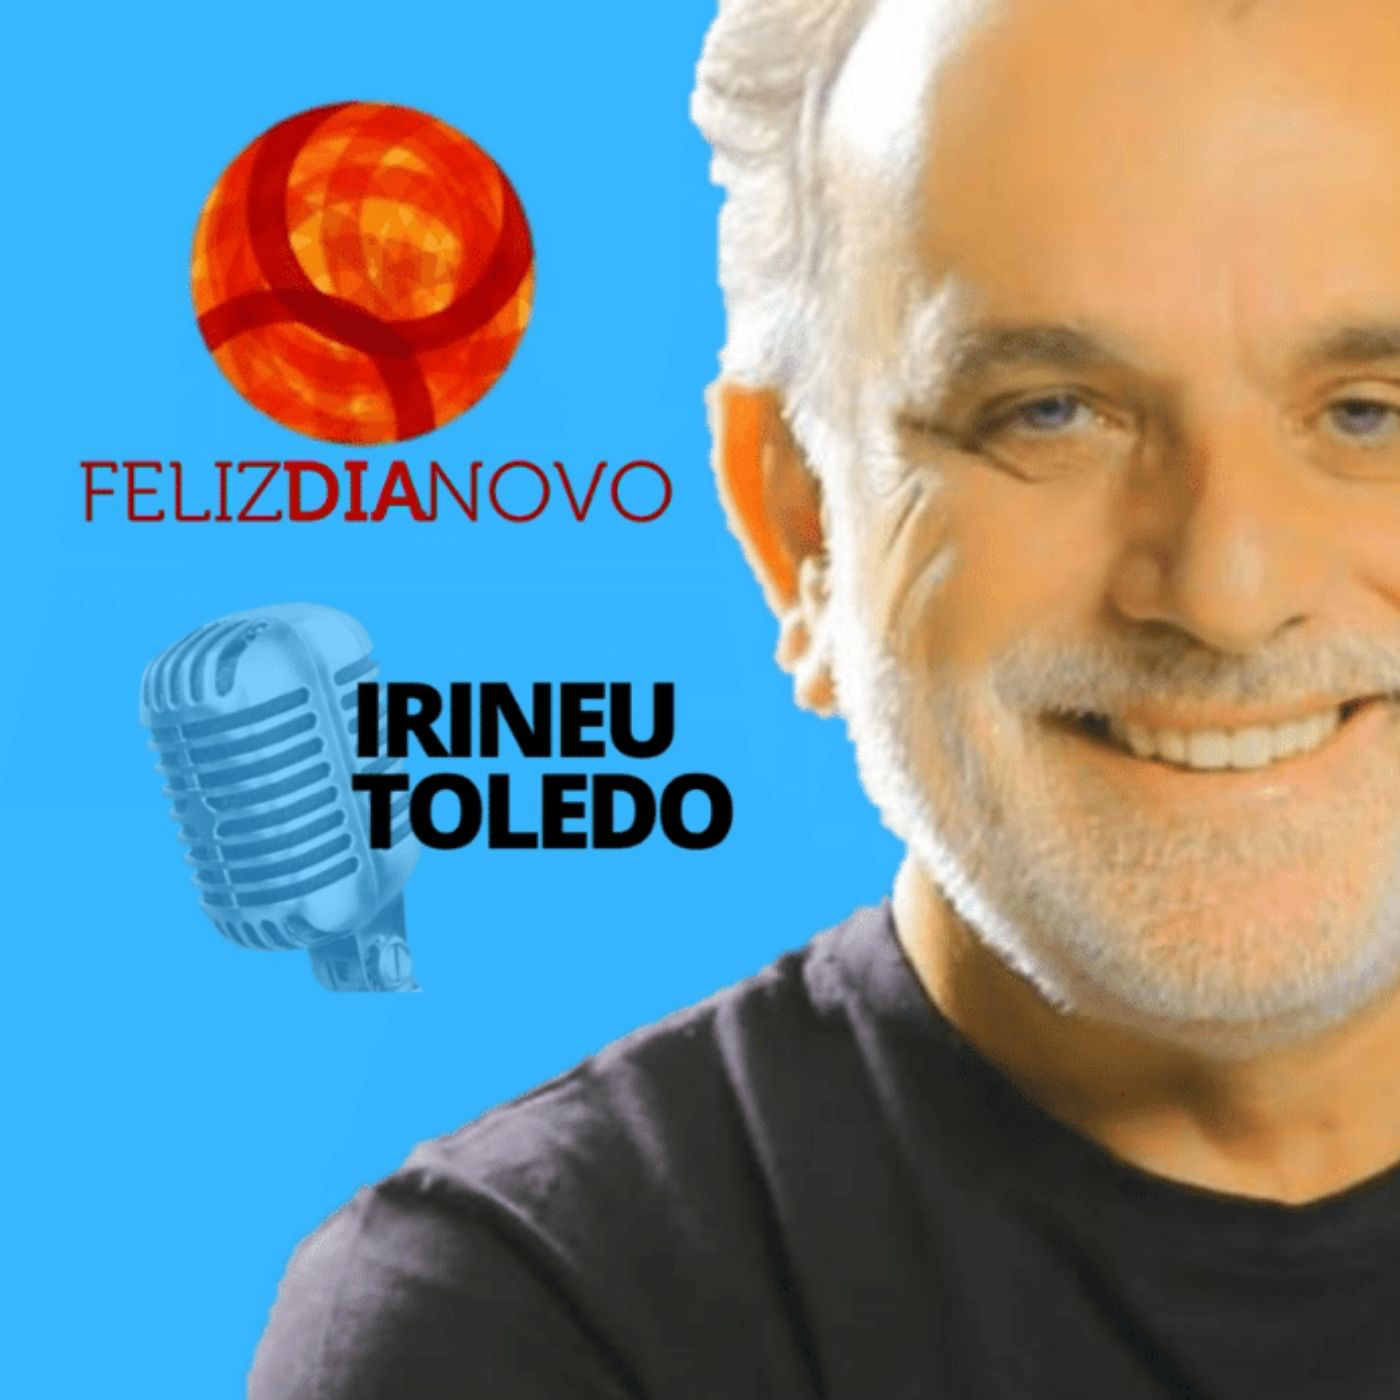 A highlight from DILOGO NUTRITIVO com Ney Melo  Cidades, nanismo e preconceito